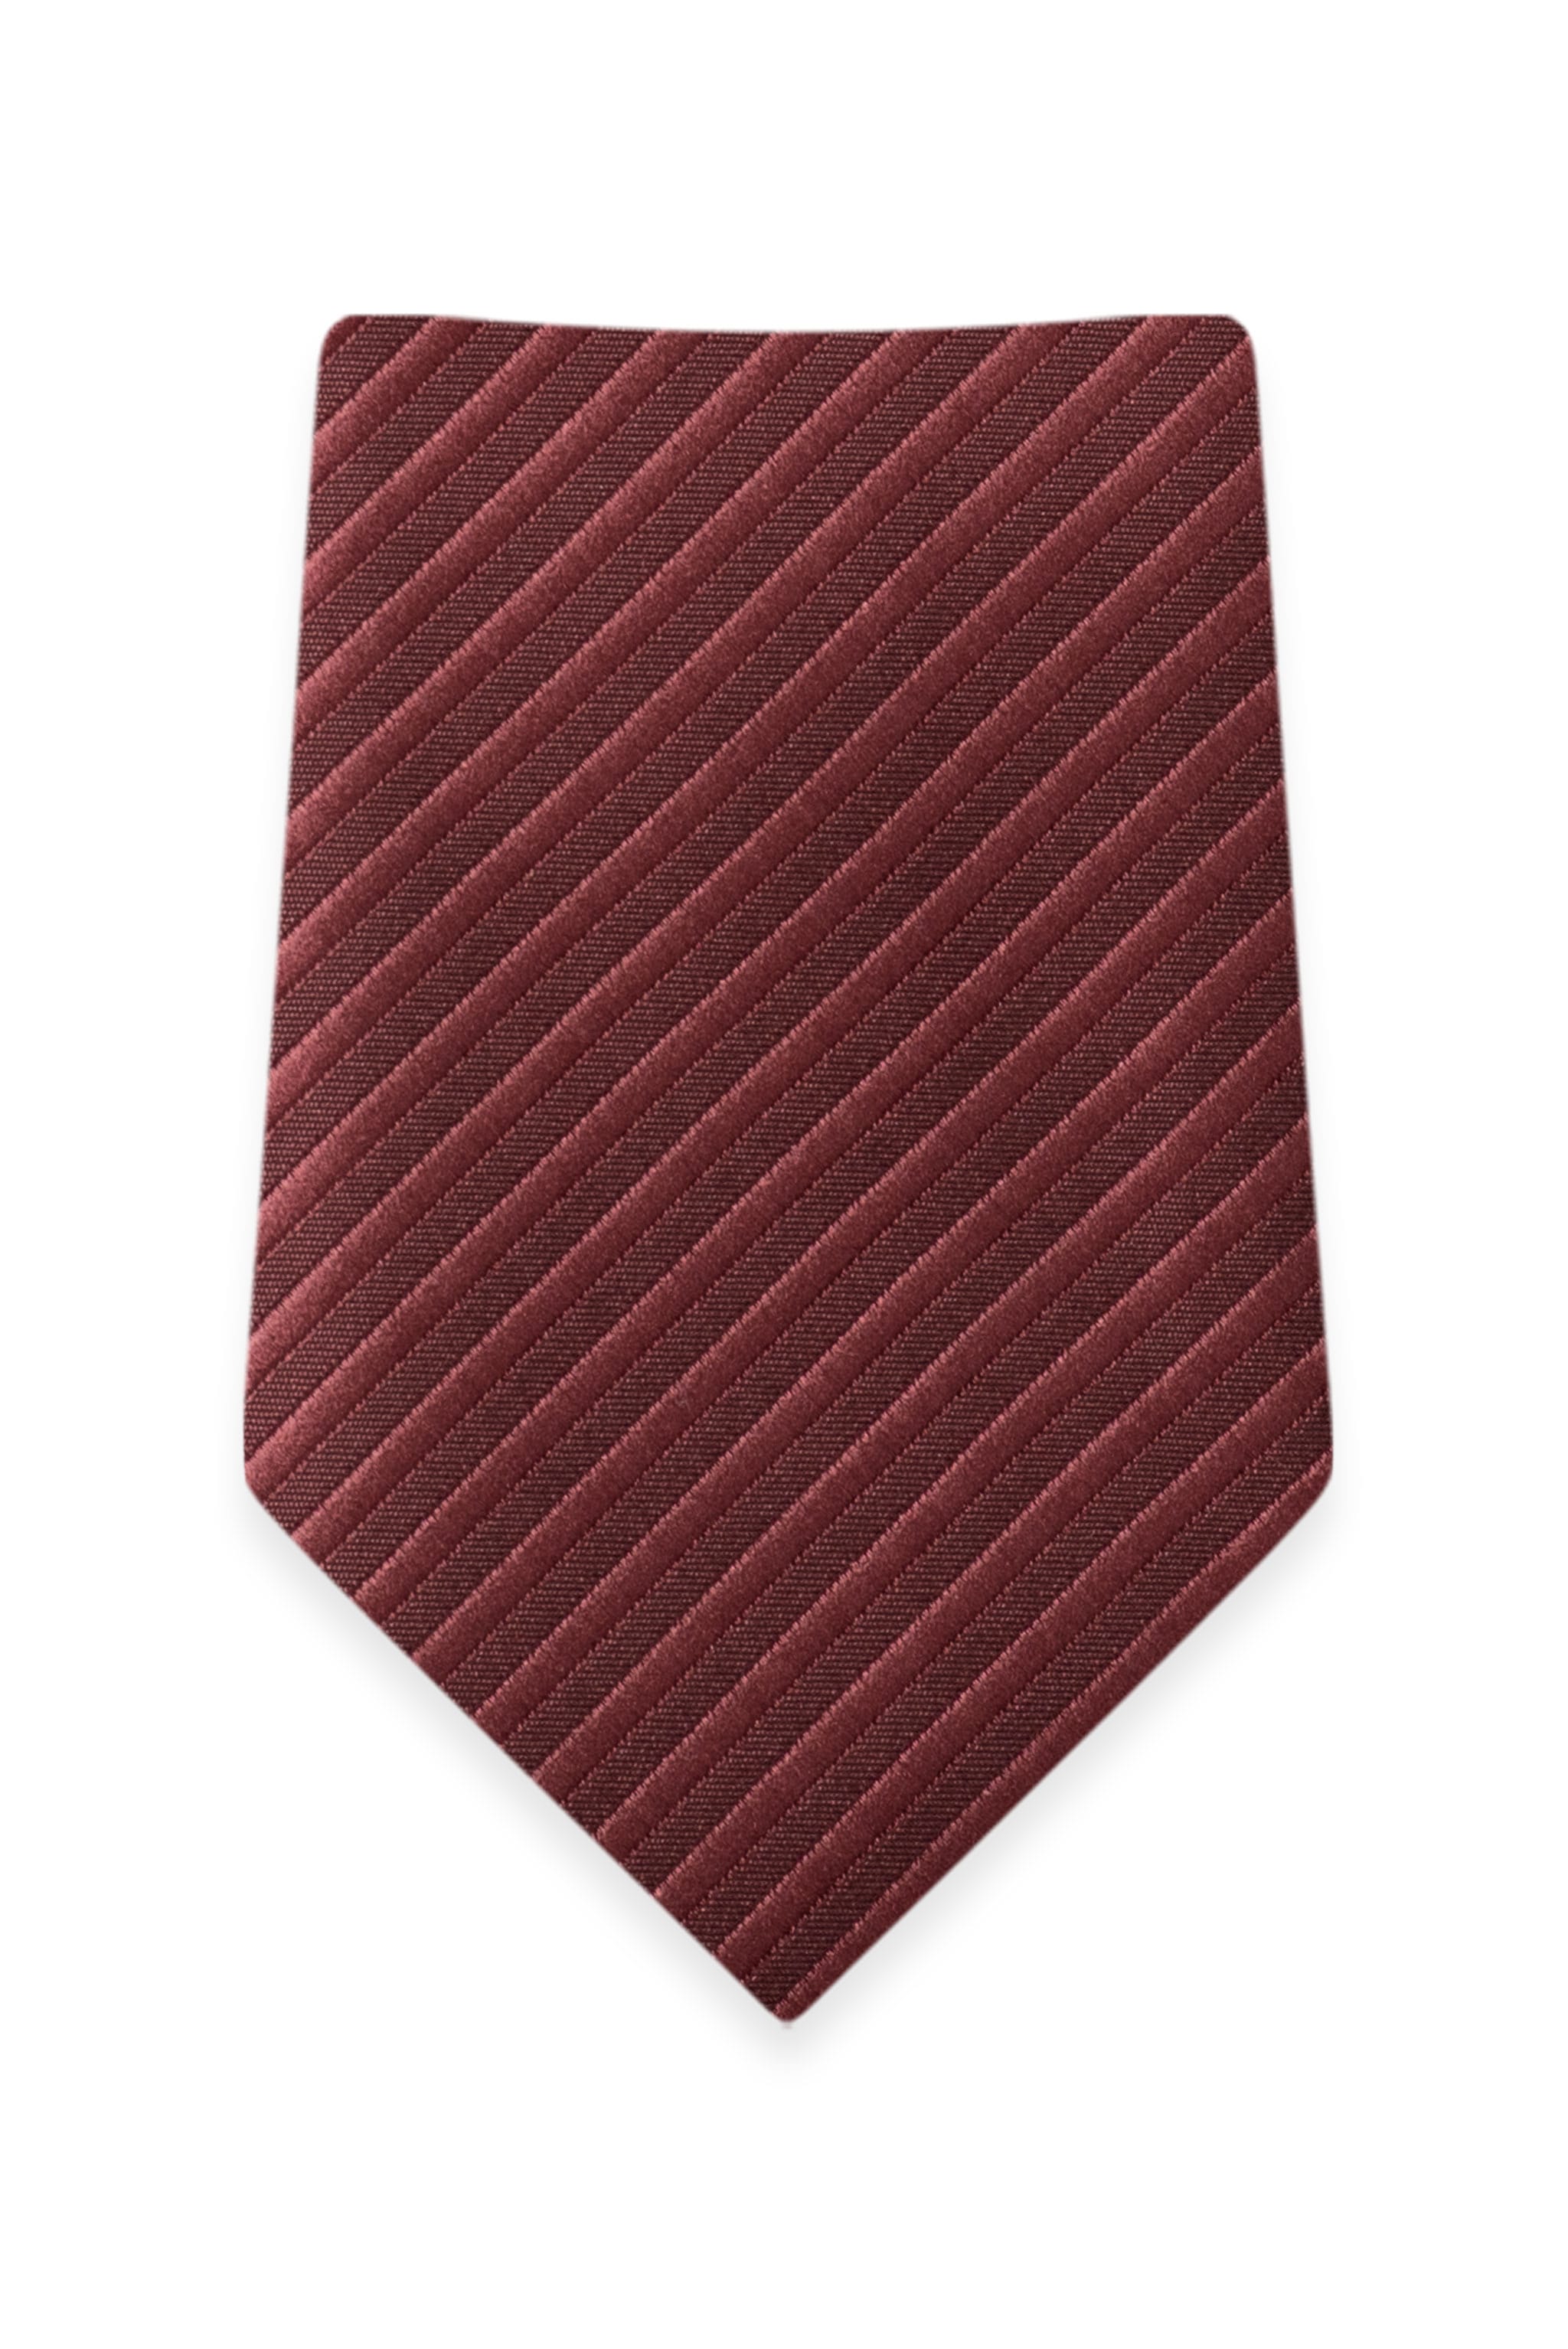 Striped Rosewood Self-Tie Windsor Tie